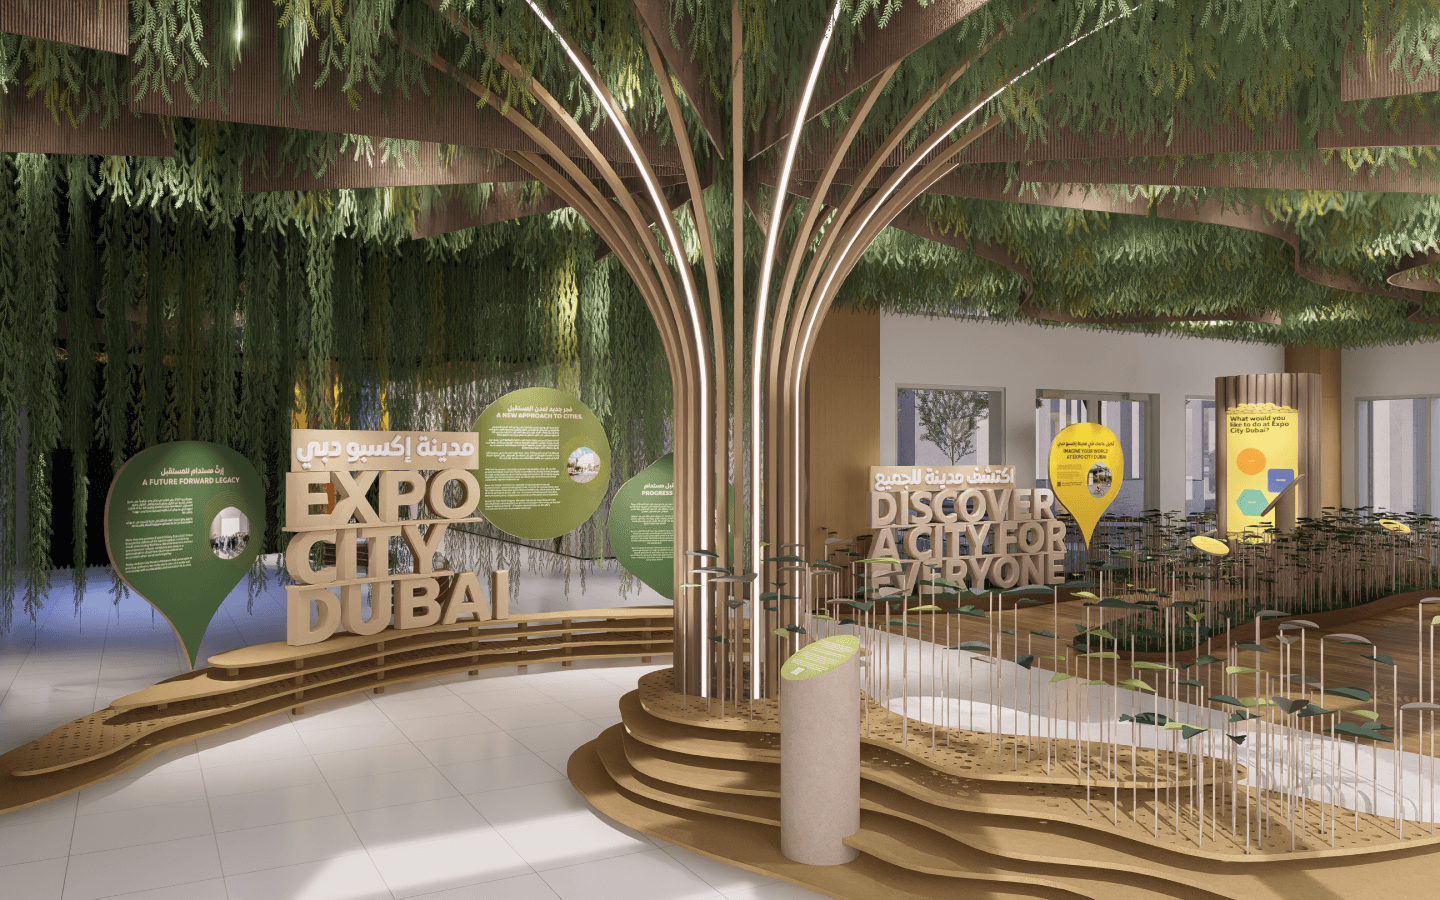 COP28 zal plaatsvinden in het futuristische Expo City Dubai. Volgens de lokale autoriteiten een voorbeeld van een duurzame stad voor de toekomst (foto: UAE – Dubai).